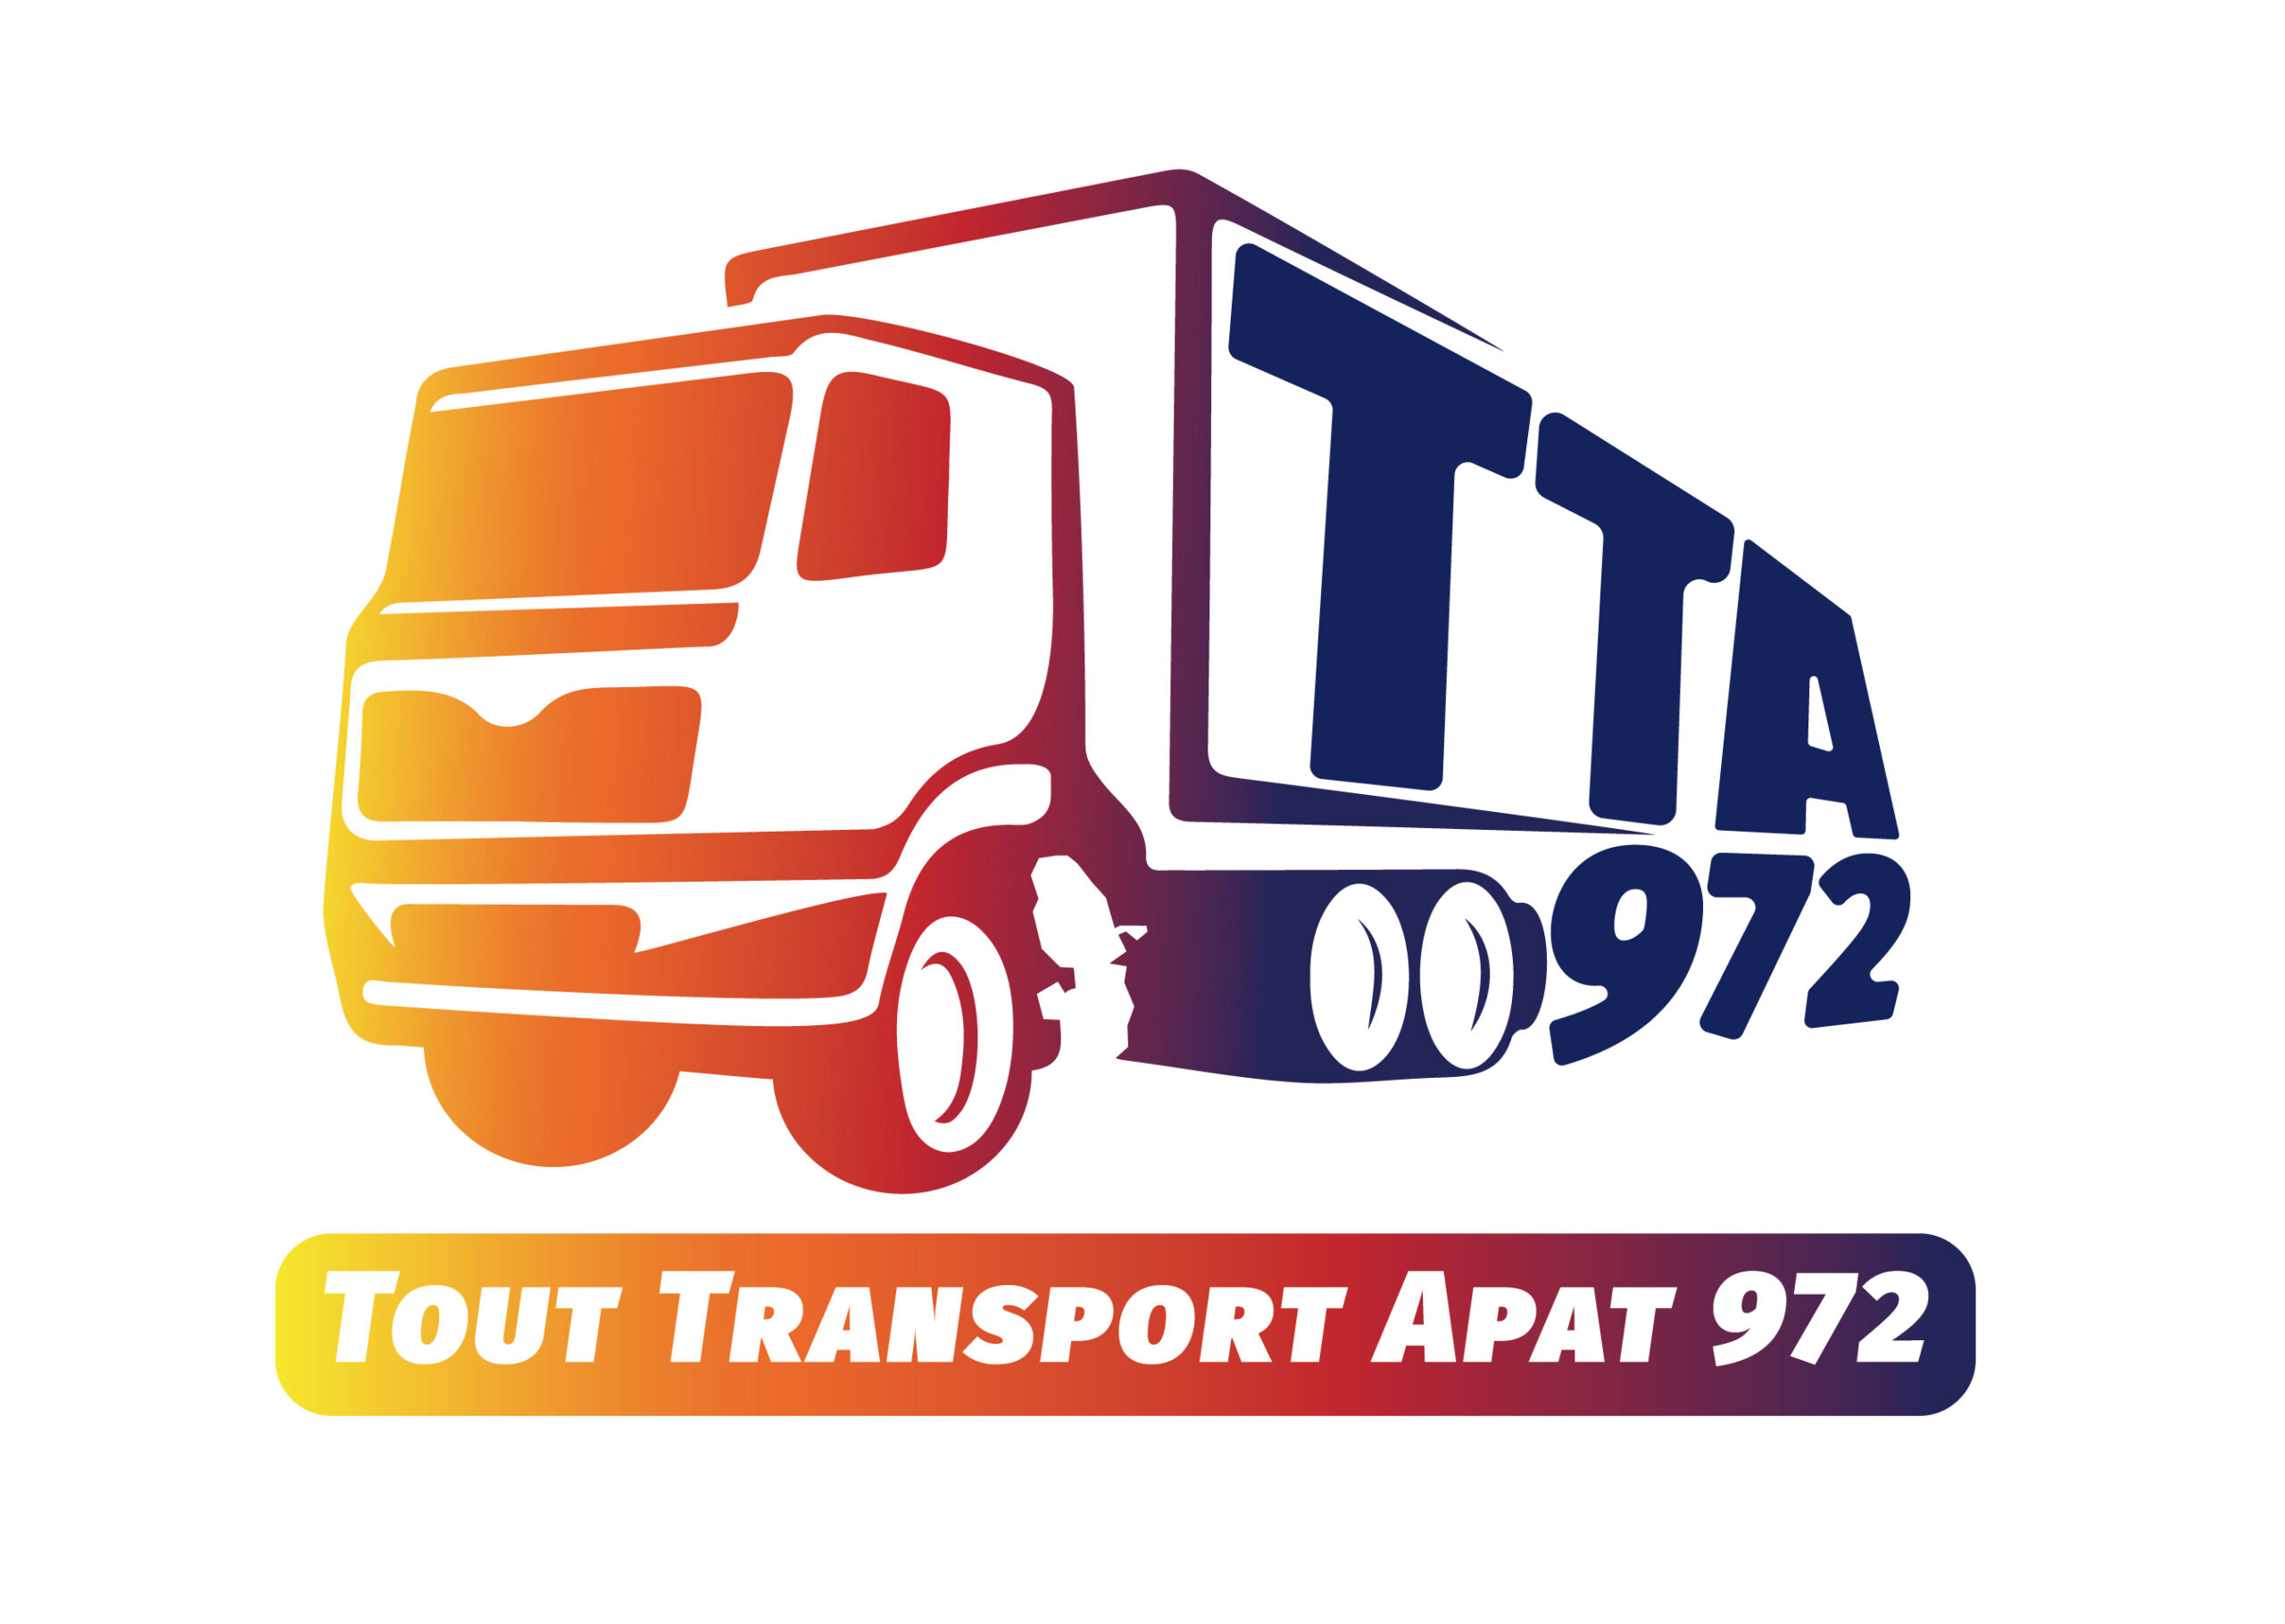 Transport Tarrieu Apat 972